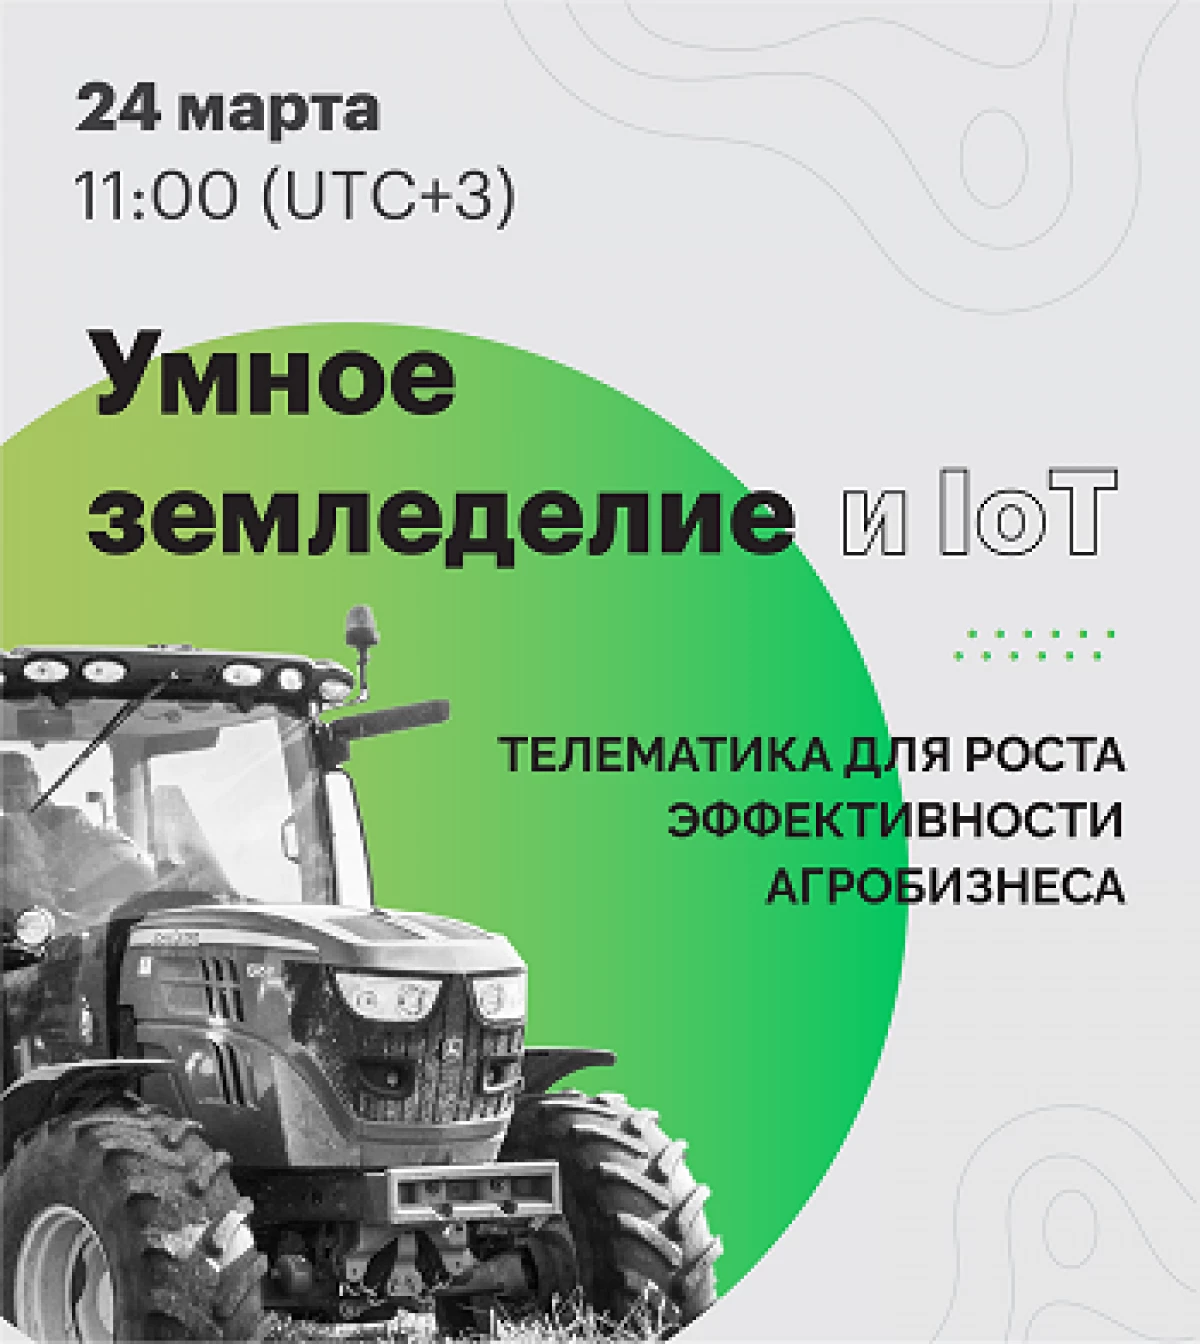 Konferenca mbi Bujqësinë e Smart do të mbahet më 24 mars në formatin online